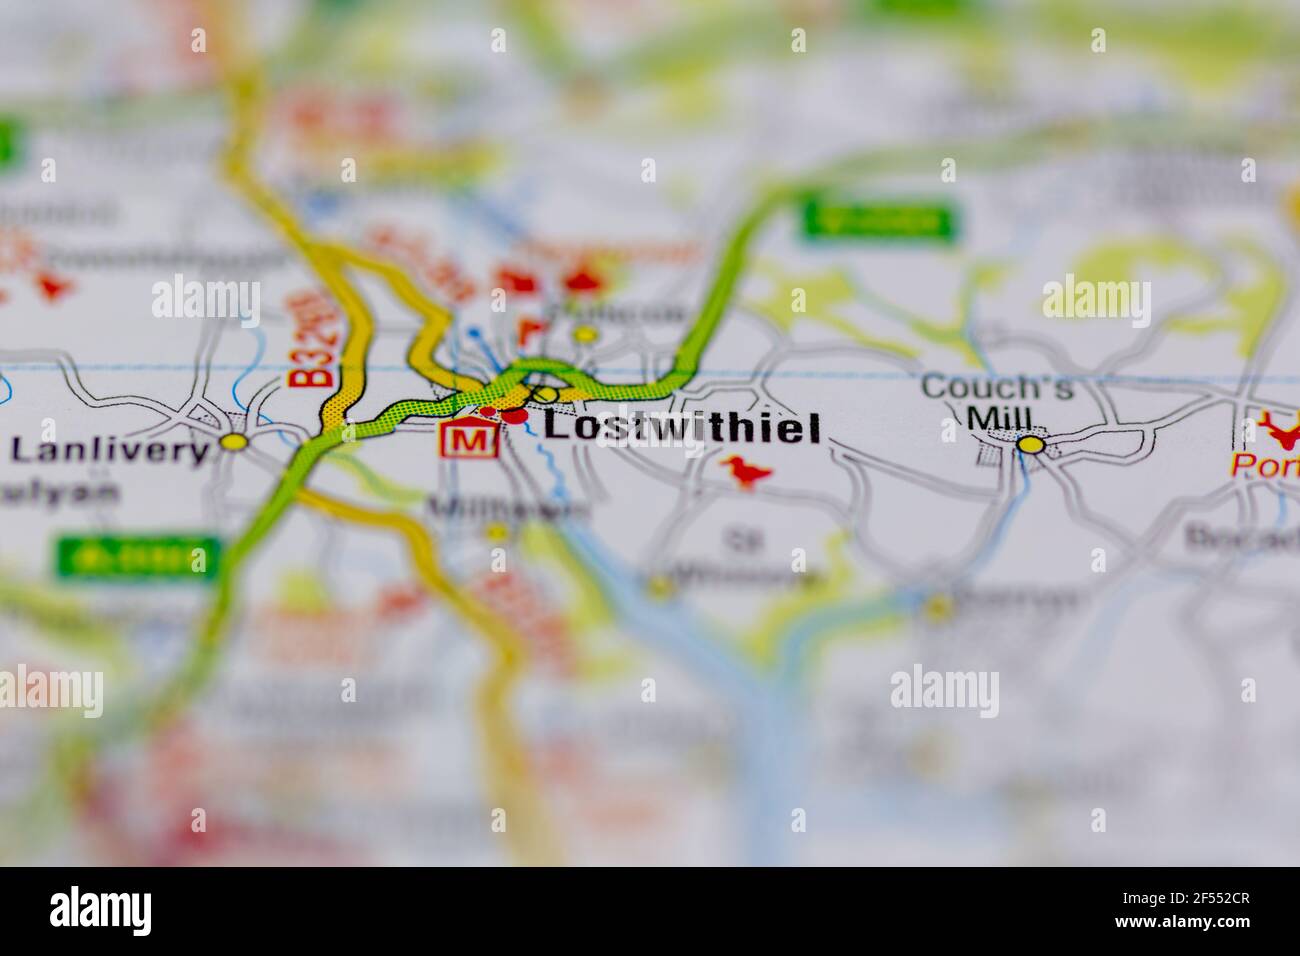 Lostwithiel auf einer Geografie- oder Straßenkarte dargestellt Stockfoto